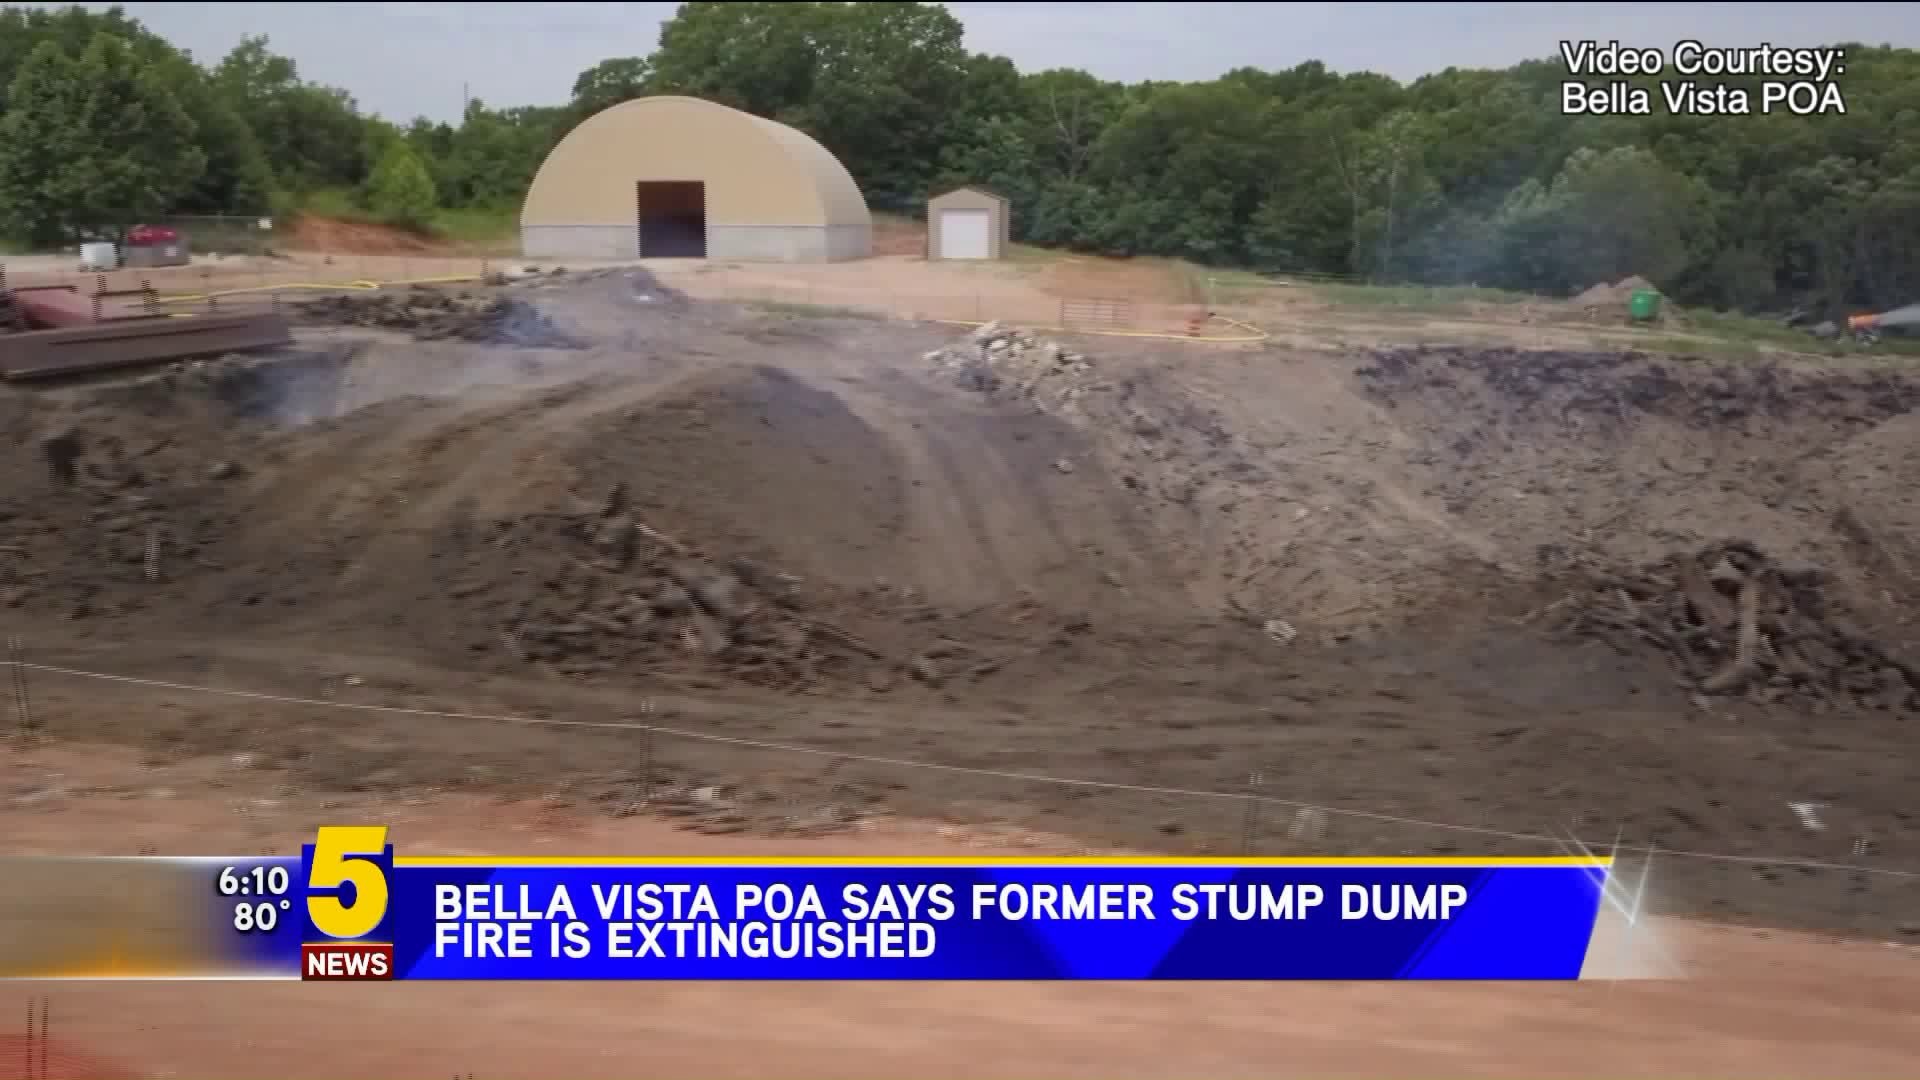 Bella Vista POA Says Stump Dump Fire Extinguished